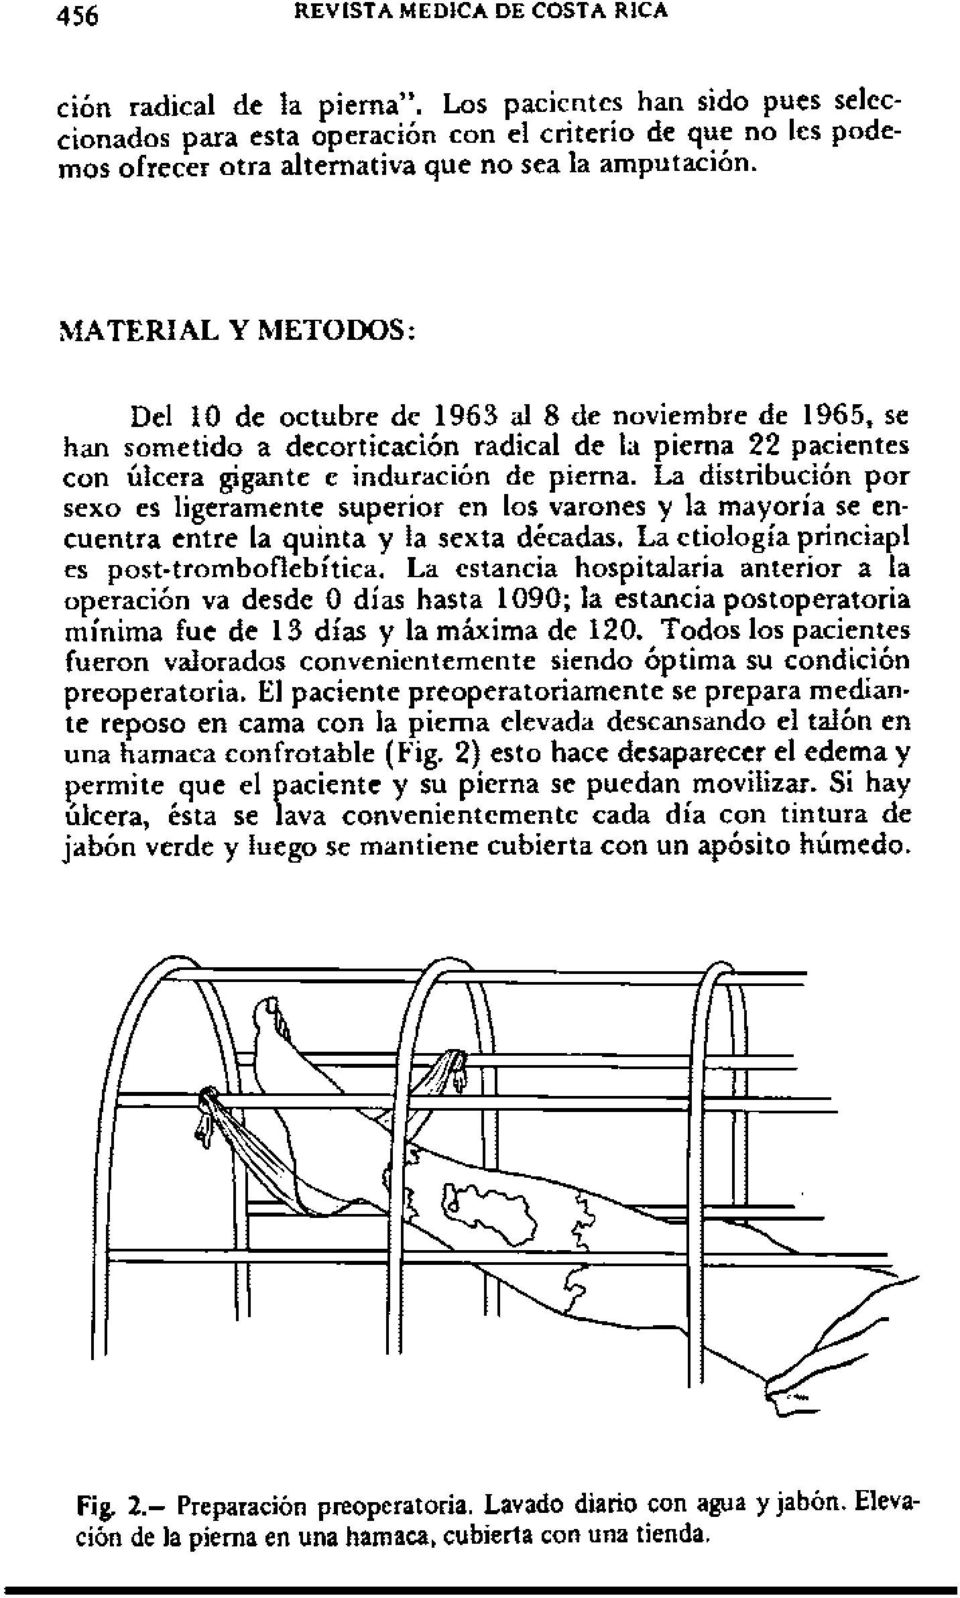 MATERIAL Y METOOOS: Del 10 de octubre de 1963 al 8 de noviembre de 1965, se han sometido a decorticación radical de la pierna 22 pacientes con úlcera gigante e induración de pierna.